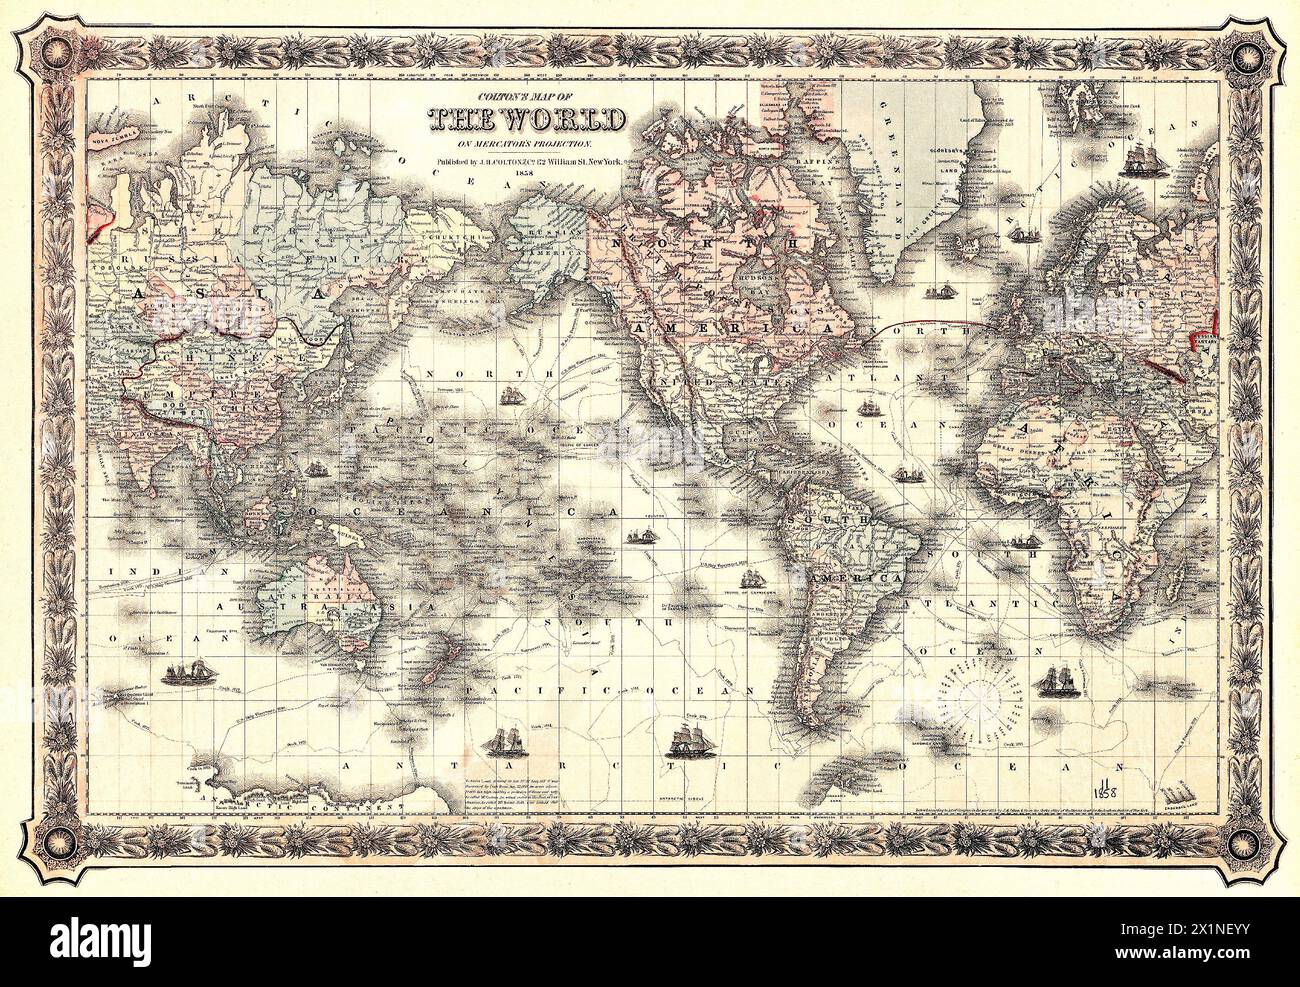 La carte du monde de Colton sur la projection de Mercator (1858) par J.H. Colton & Co. Original de la Beinecke rare Book & Manuscript Library. Banque D'Images